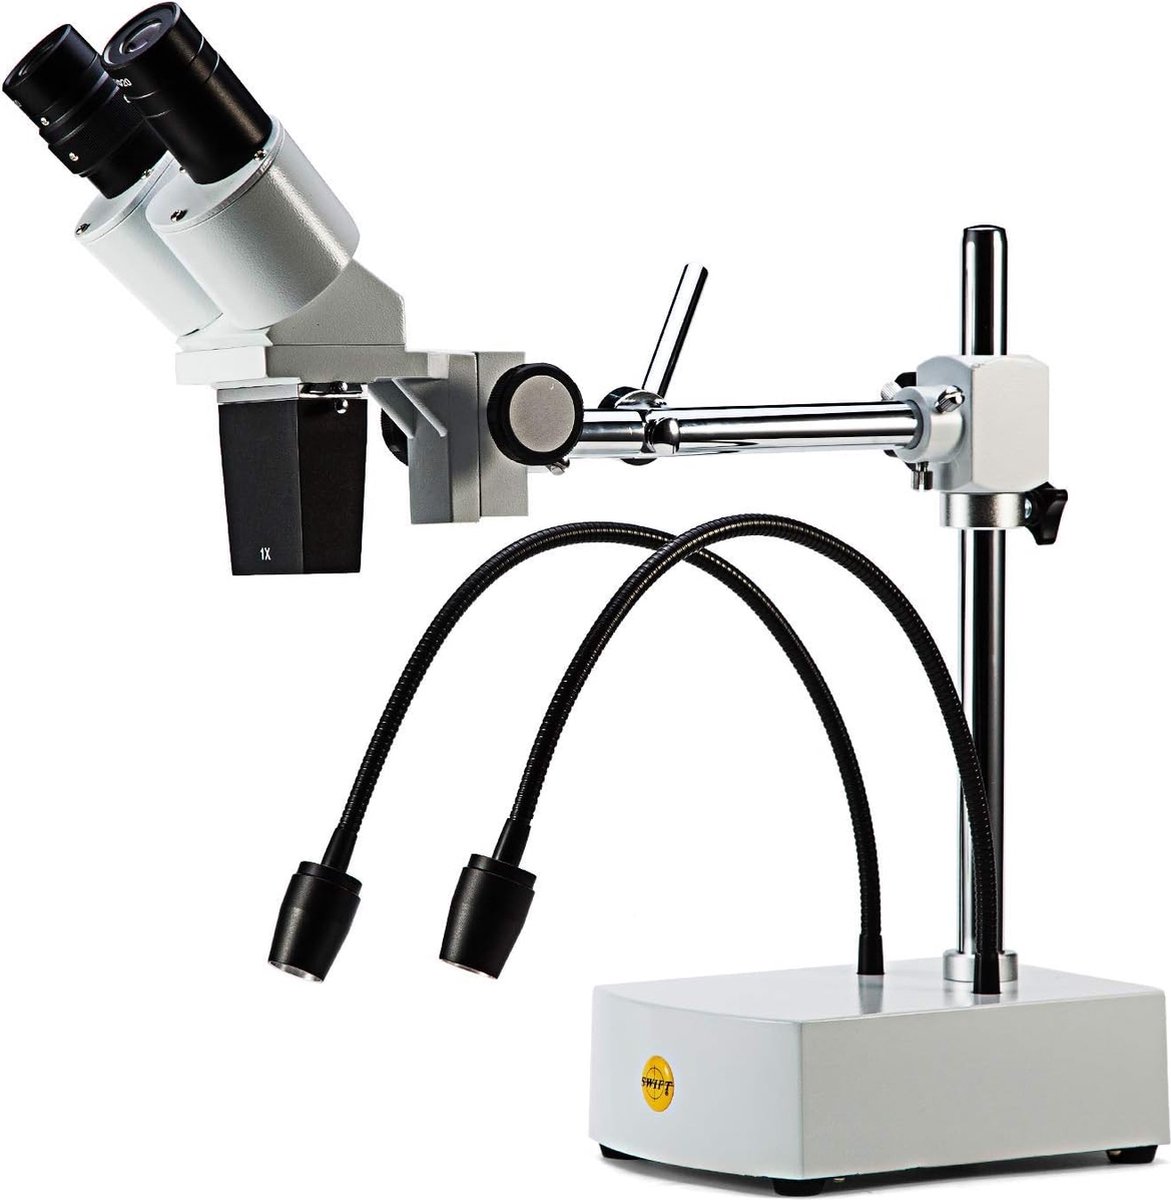 SWIFT - SS41 Professionele Stereomicroscoop voor Precisiewerk - 10X / 20X Vergroting - Ergonomisch Ontwerp - Dubbele Flexibele LED-verlichting - Geschikt voor Camera